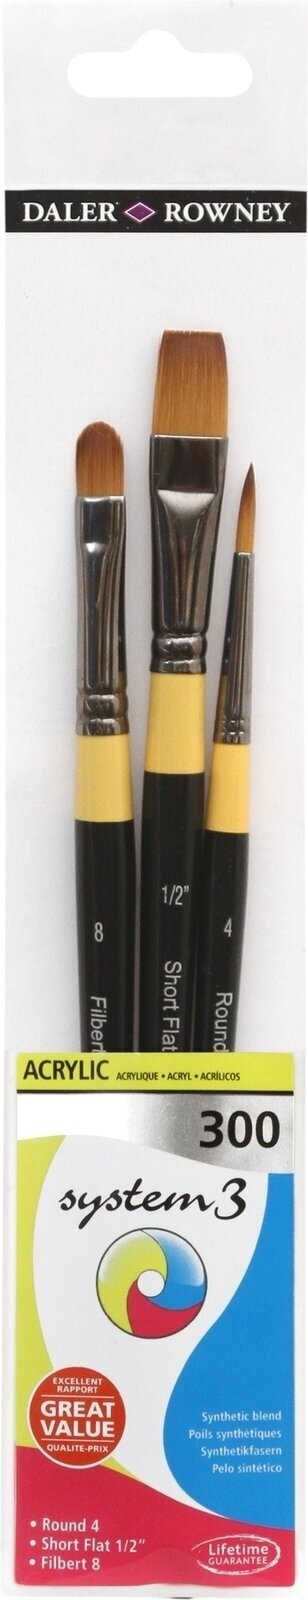 Paint Brush Daler Rowney System3 Acrylic Brush Synthetic Set of Brushes 1 pc